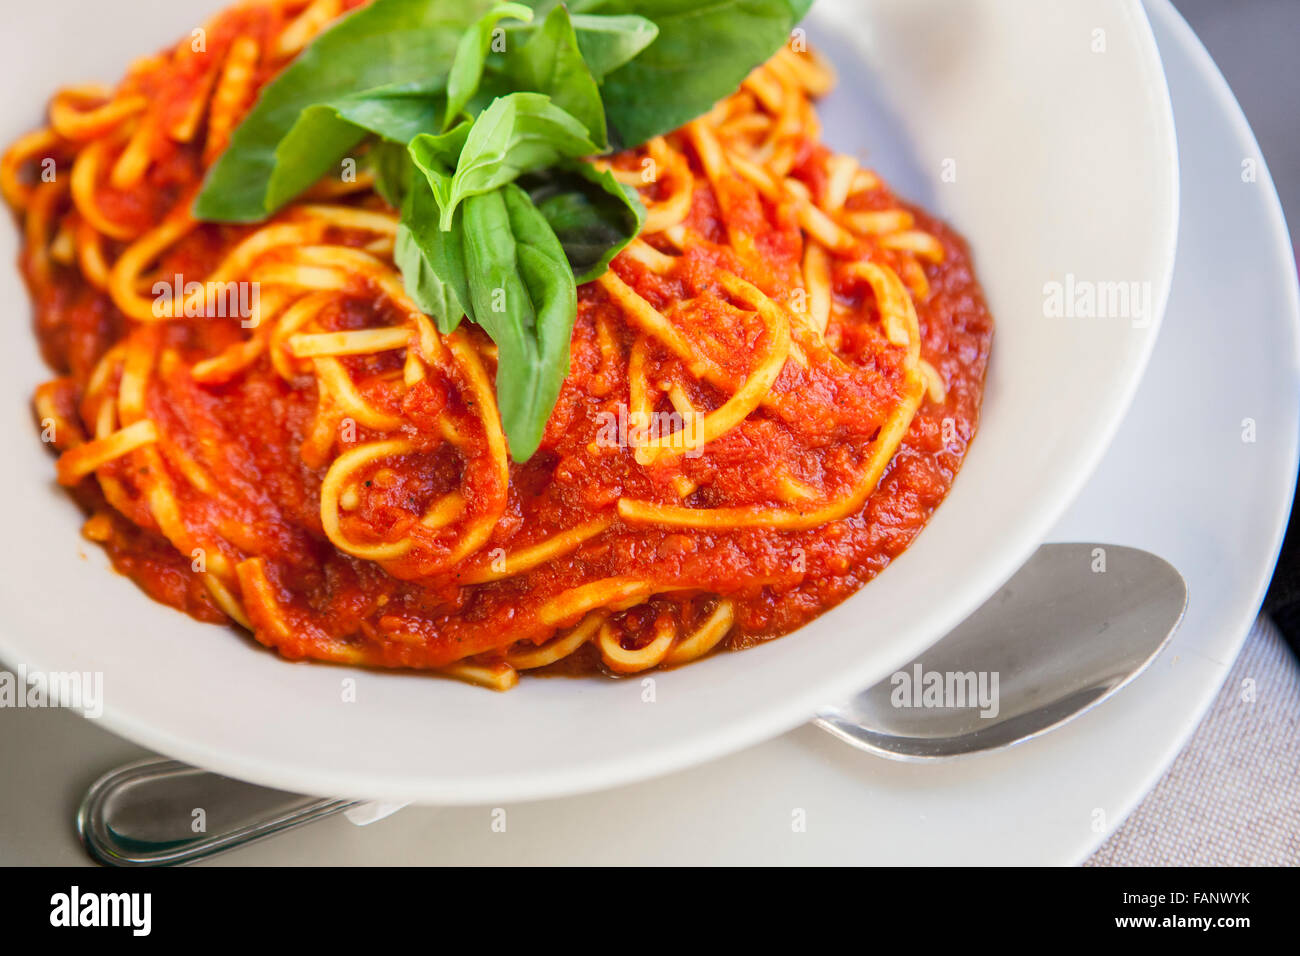 Piatto di spaghetti alla bolognese con basilico guarnire. Closeup shot con il fuoco selettivo Foto Stock